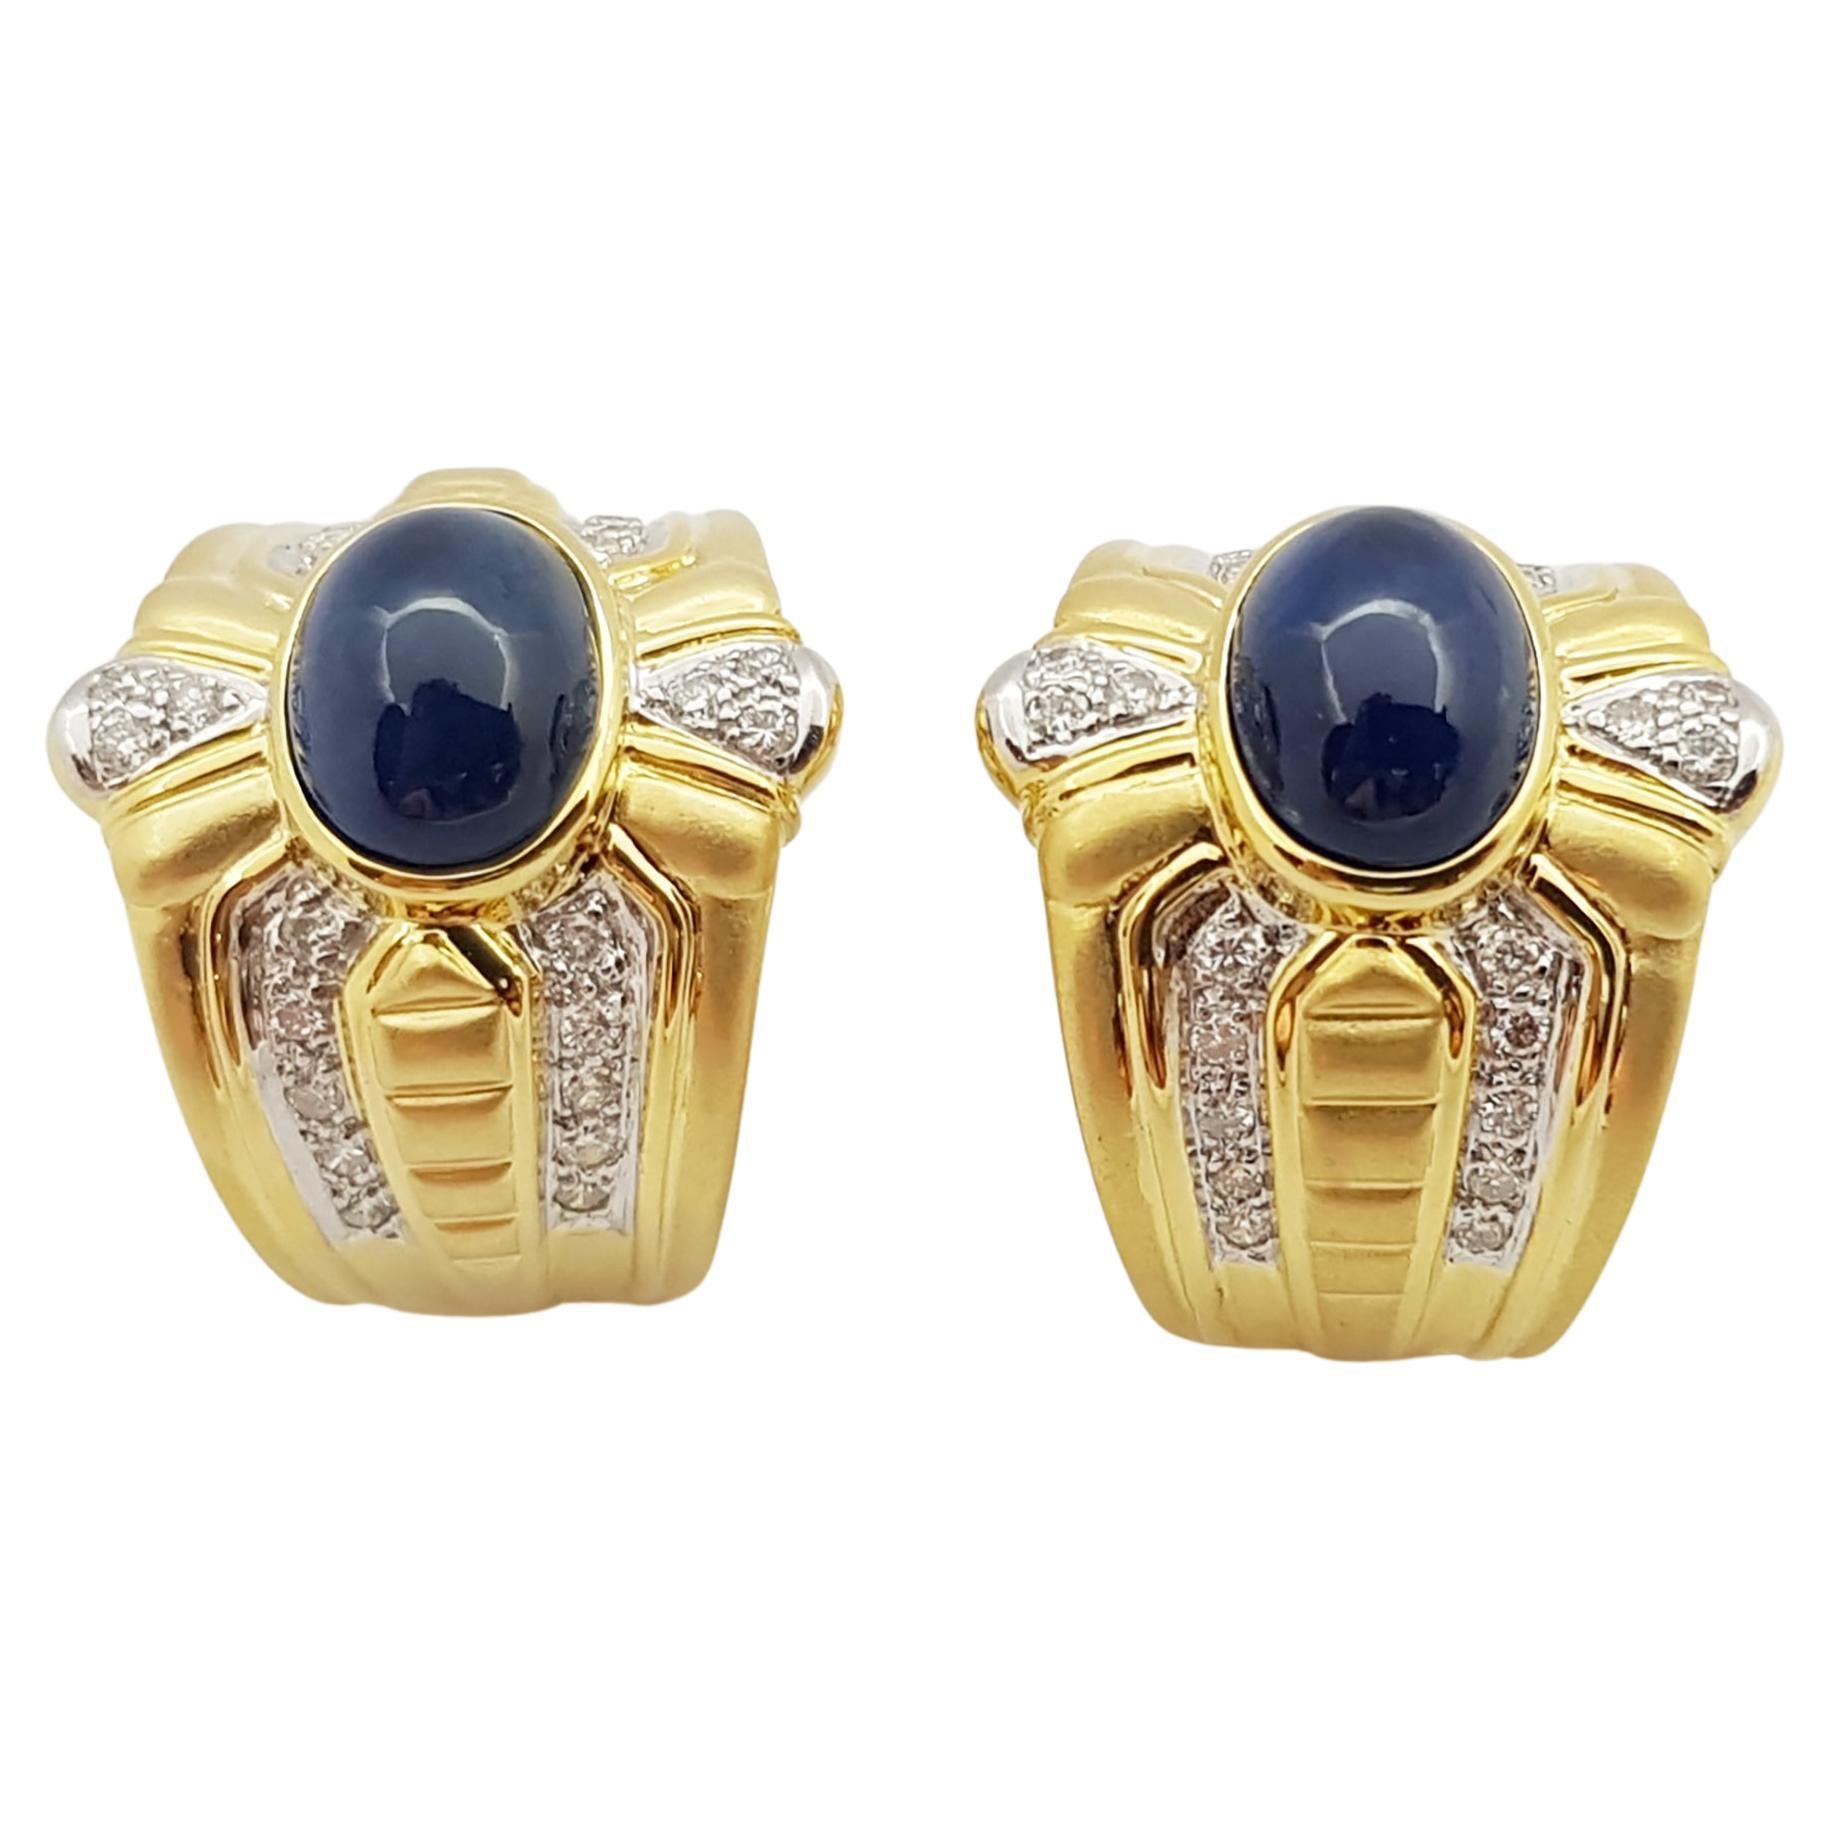 Ohrringe aus 18 Karat Gold mit blauem Cabochon-Saphir und Diamanten